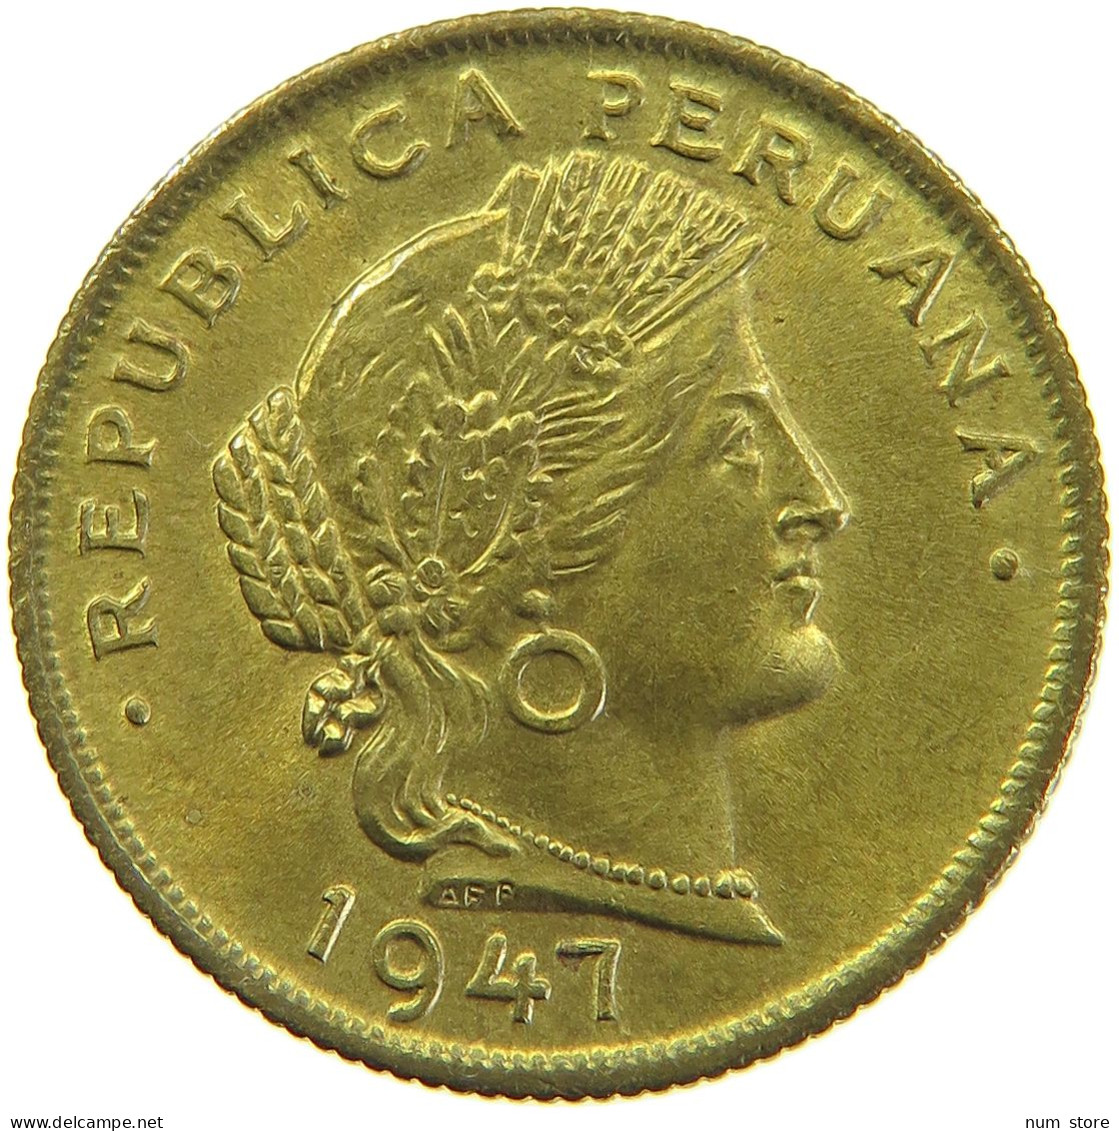 PERU 20 CENTAVOS 1947 UNC #t030 0119 - Peru